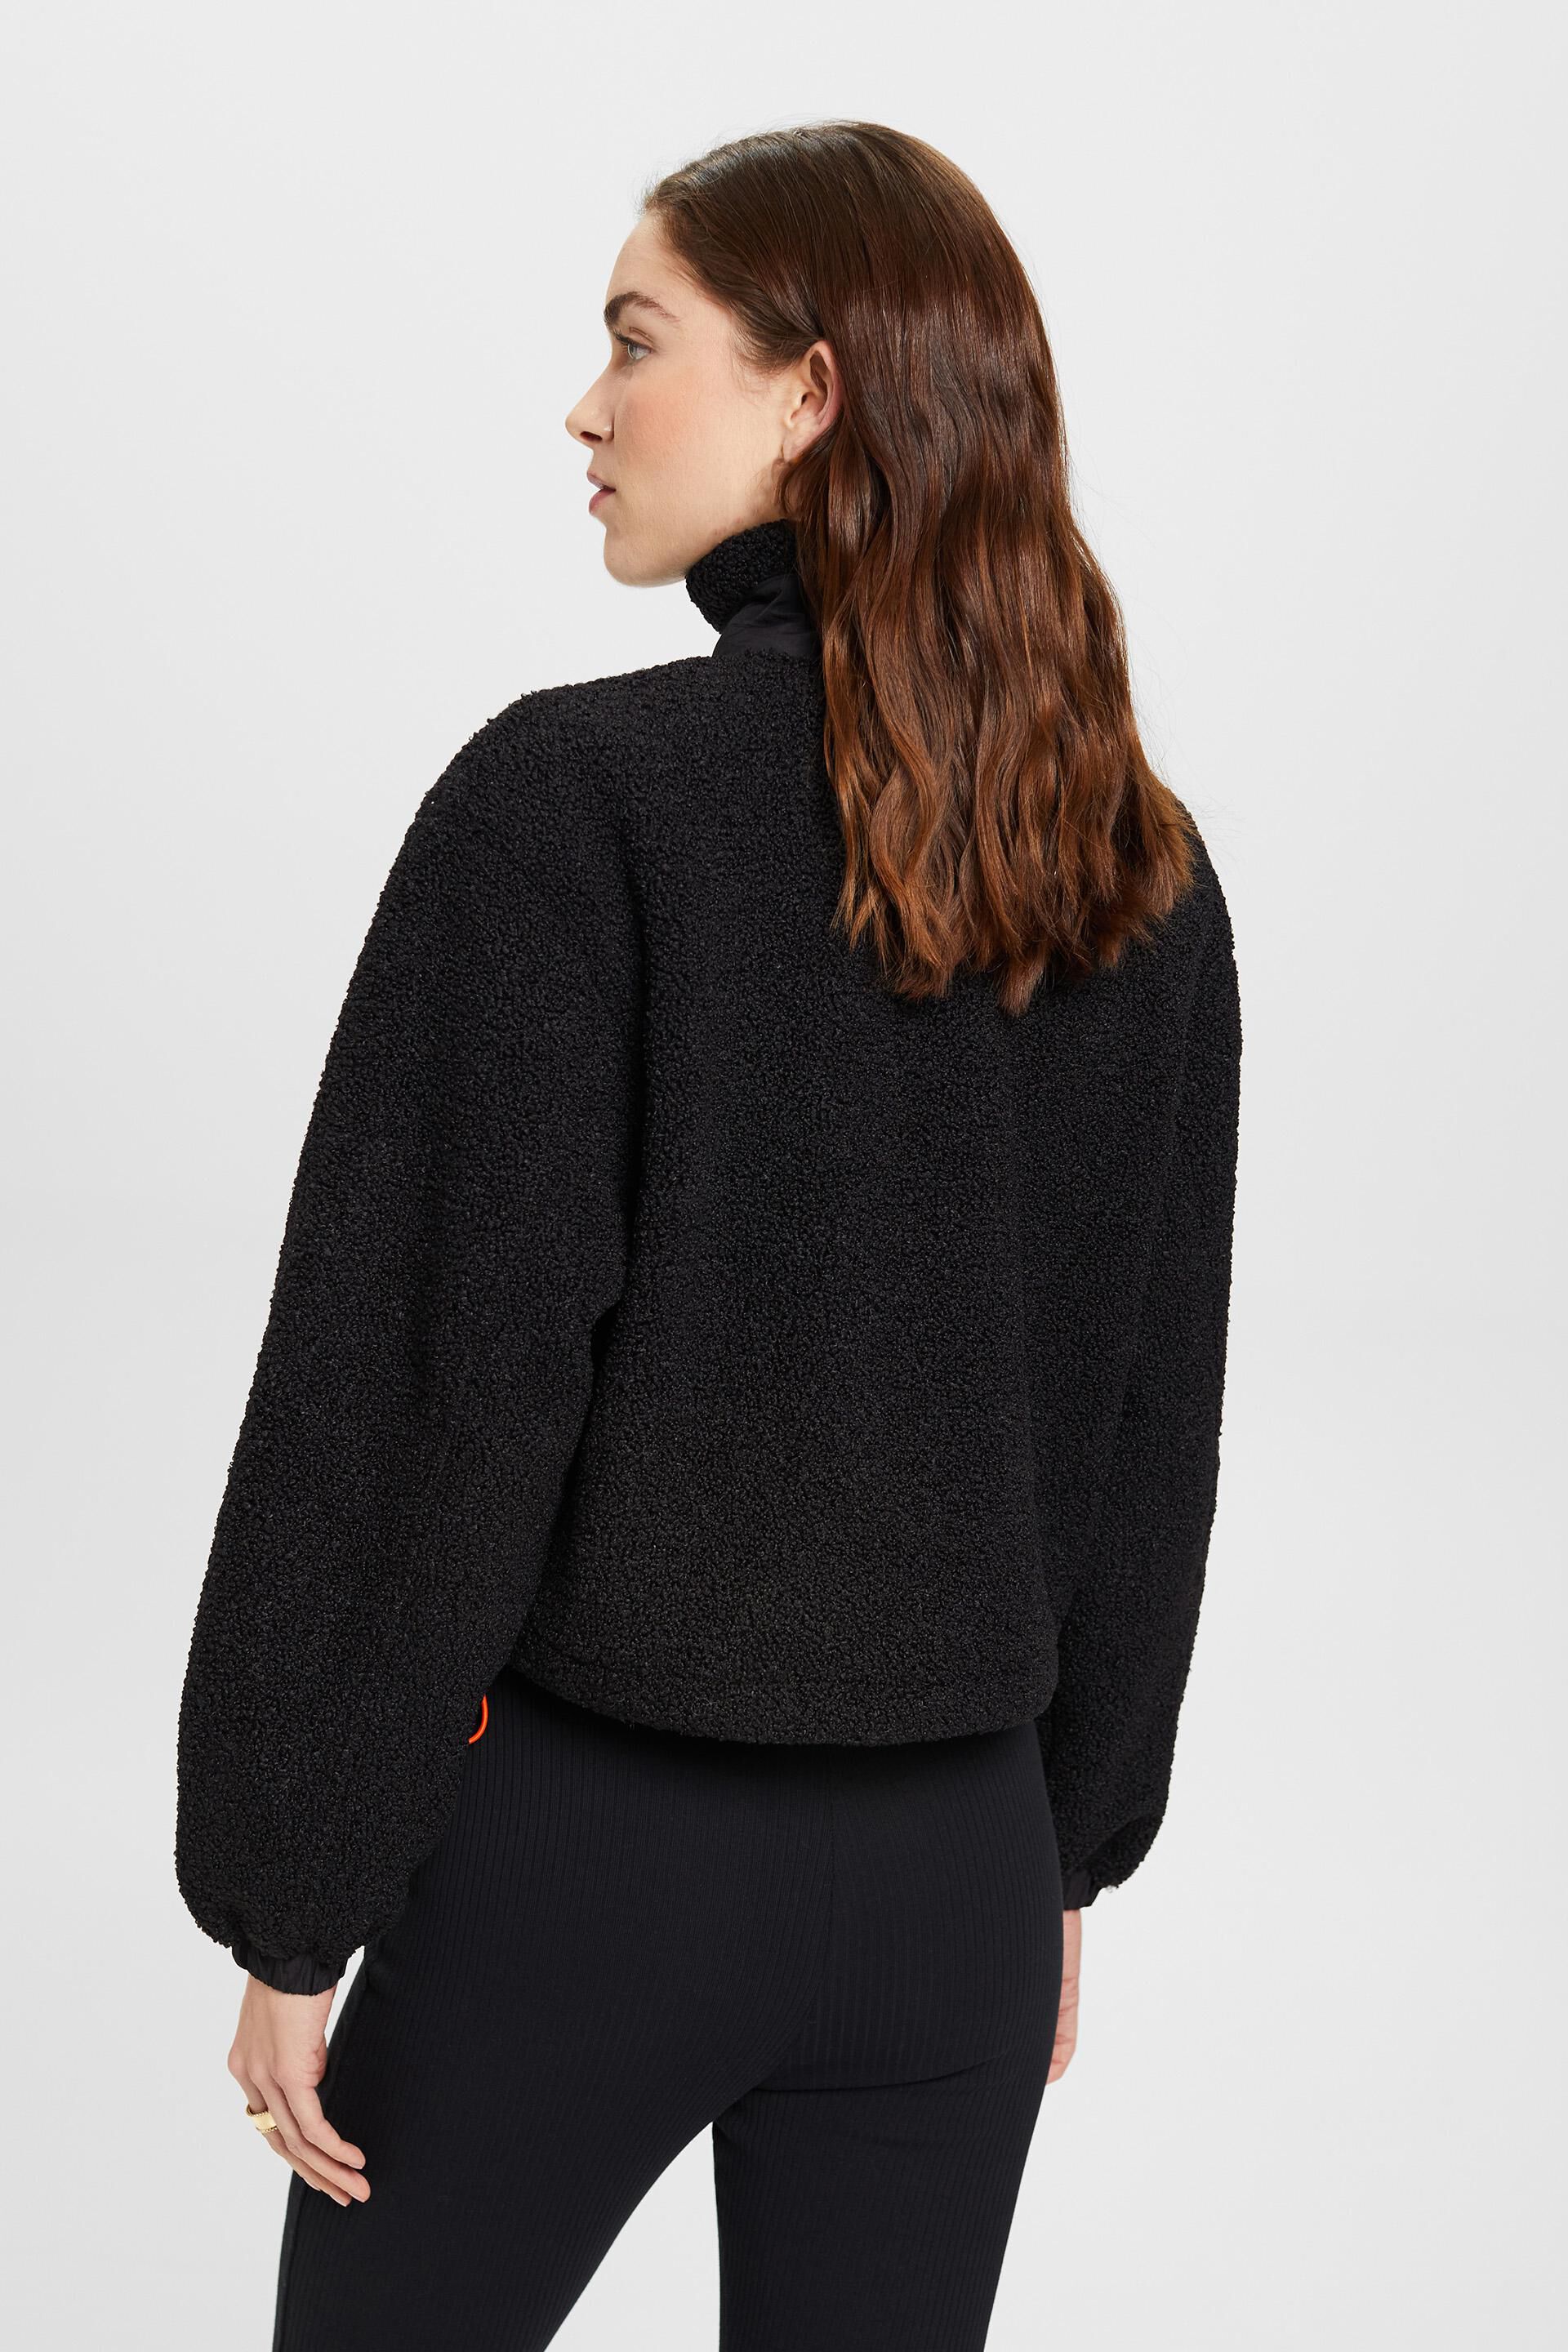 Esprit Damen Sweatshirt mit gemischtem Material Reißverschluss halbem aus